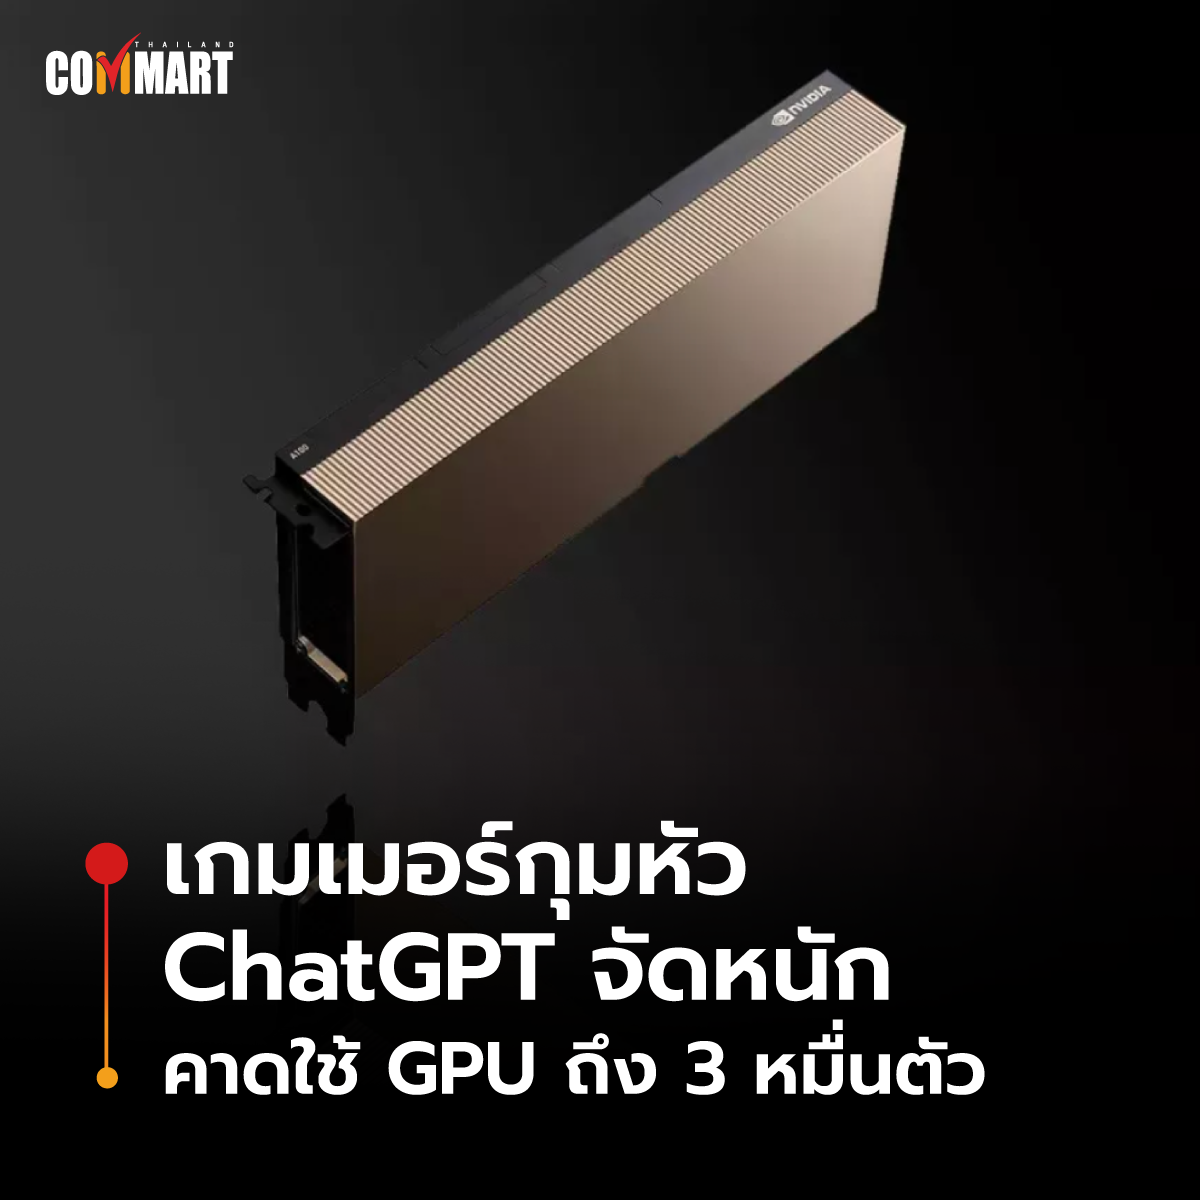 เกมเมอร์กุมหัว ChatGPT จัดหนัก คาดใช้ GPU ถึง 3 หมื่นตัว